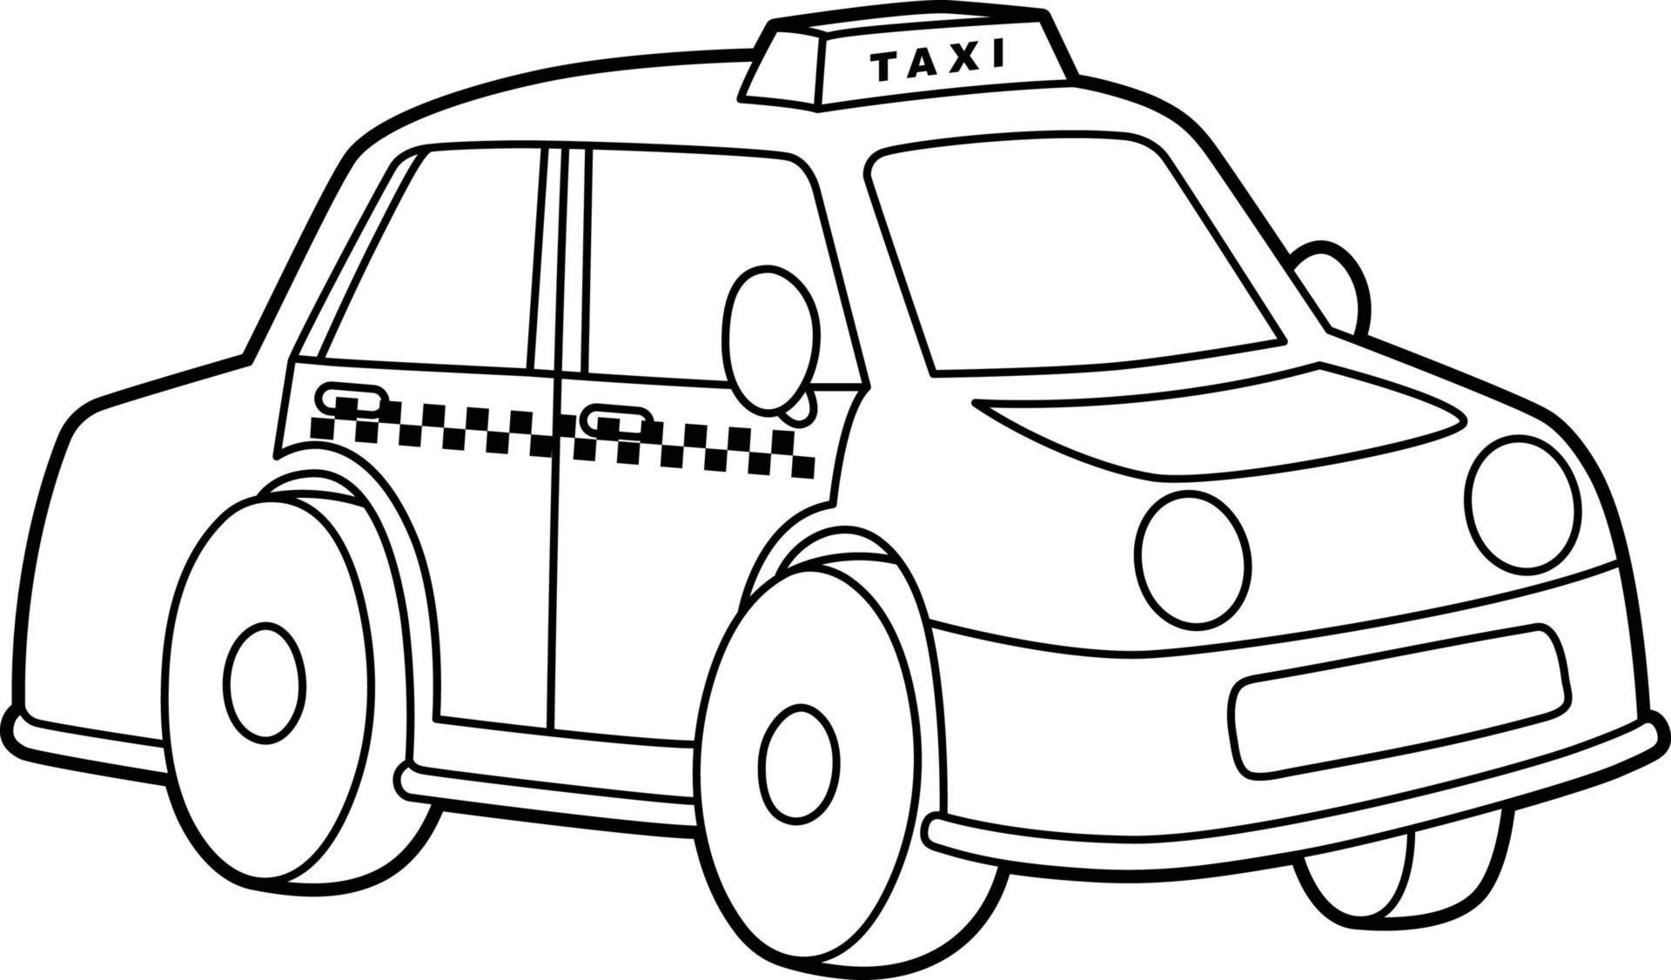 taxi målarbok isolerad för barn vektor